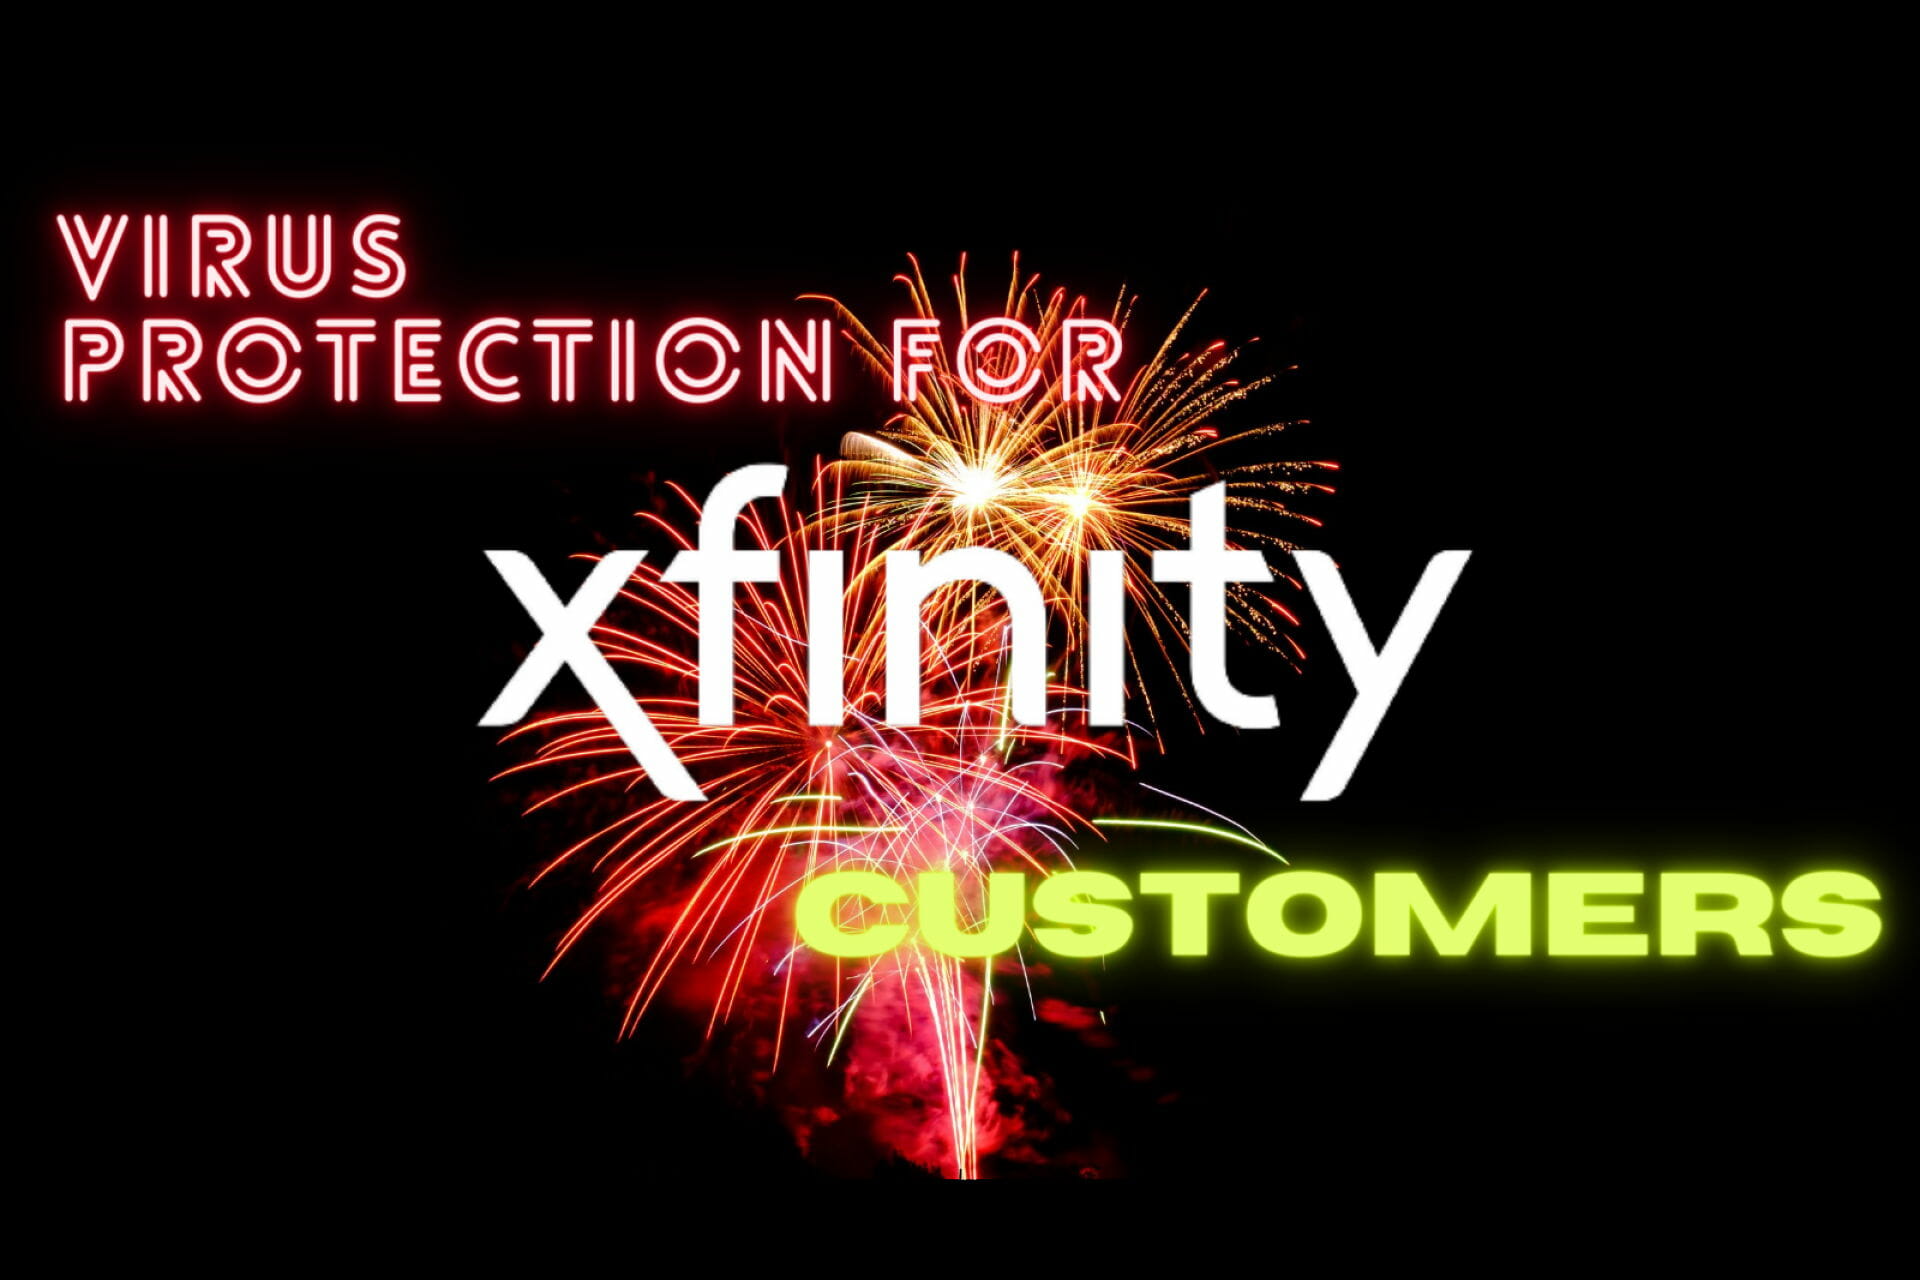 Získáte ochranu virů zdarma s Xfinity?